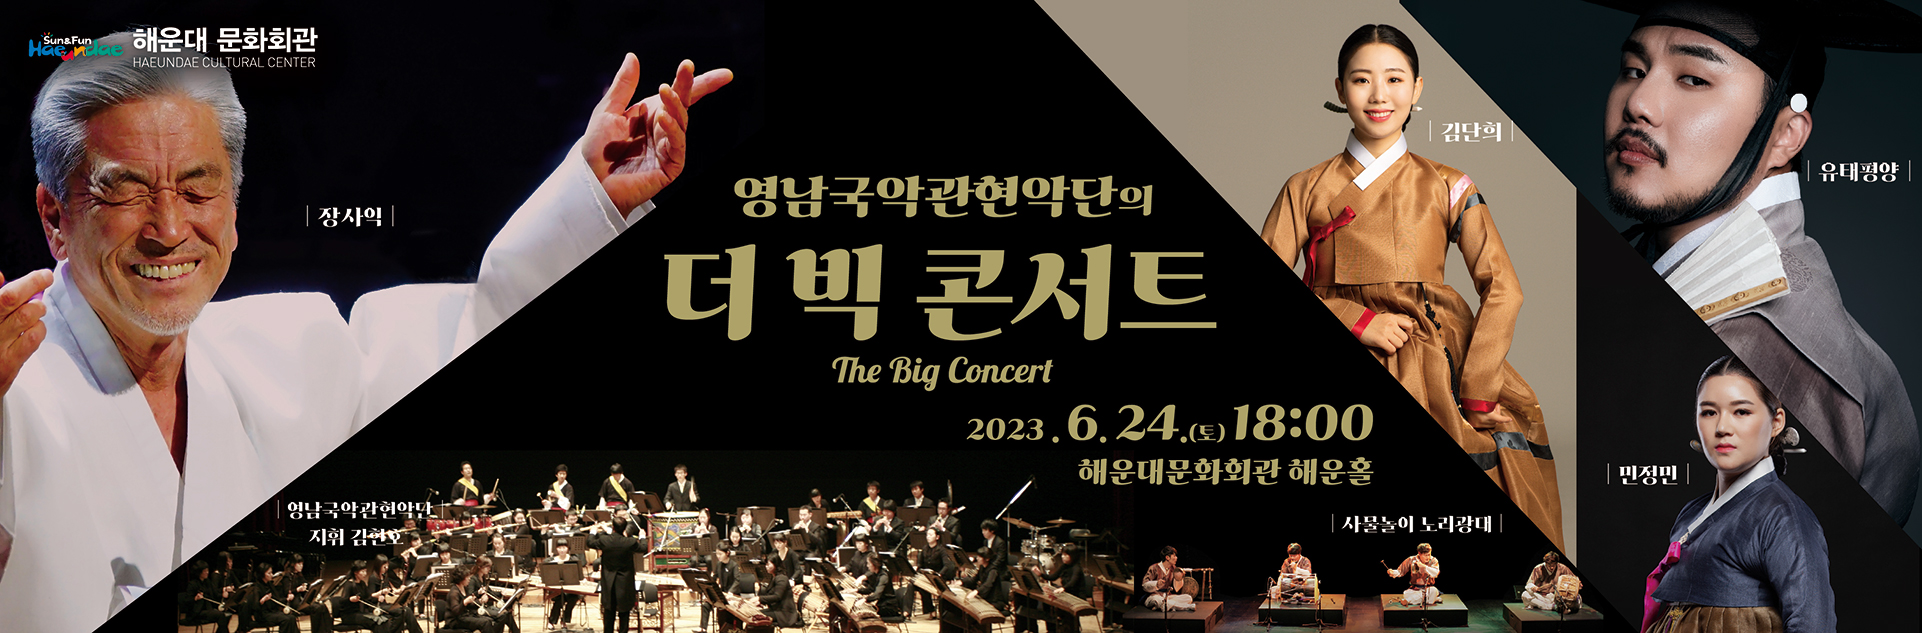 해운대문화회관 특별기획
[영남국악관현악단의 The Big Concert]
2023.6.24.(토)18:00 해운홀
p